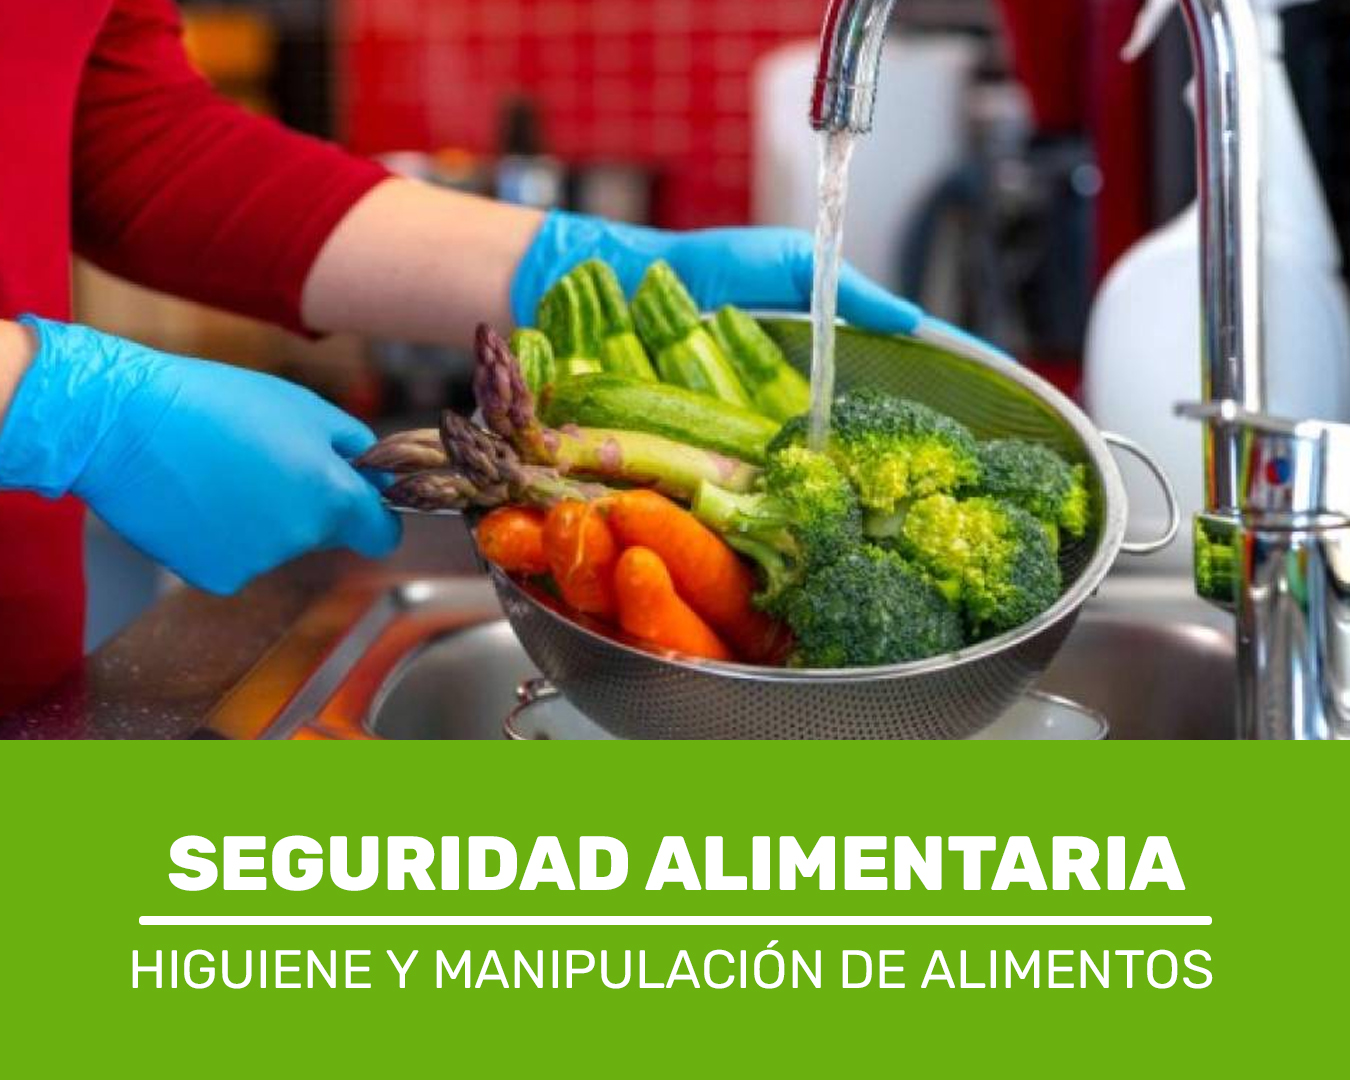 Higiene y Manipulación de Alimentos - Seguridad Alimentaria